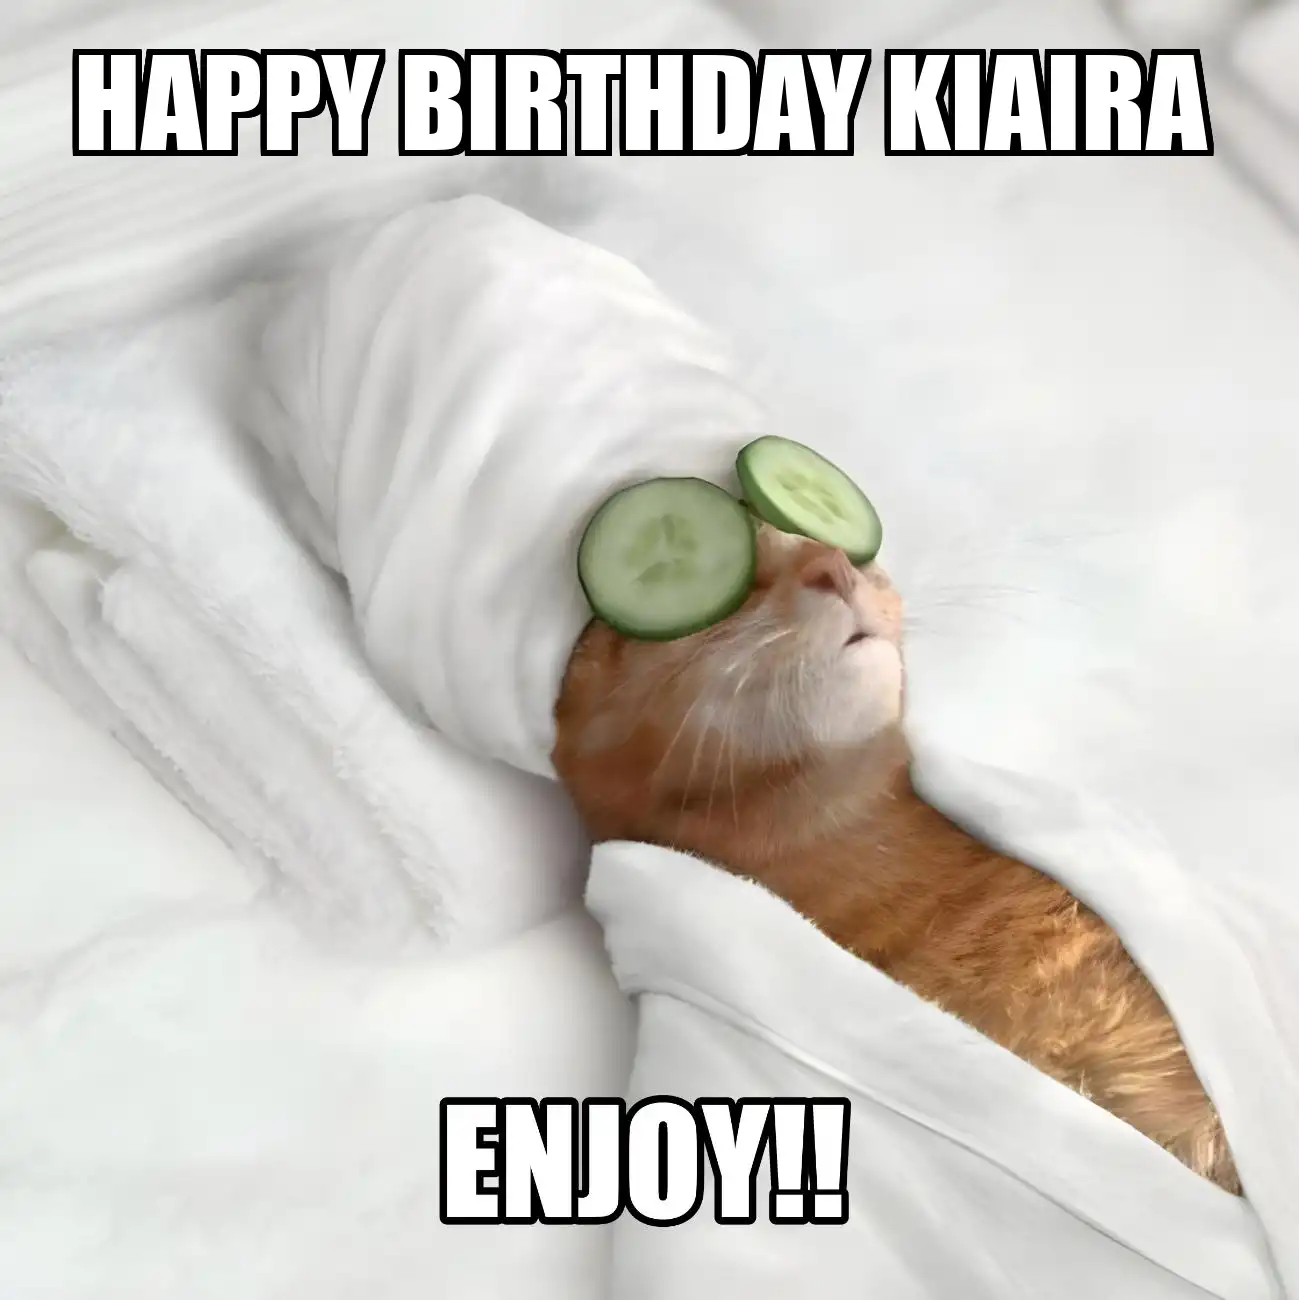 Happy Birthday Kiaira Enjoy Cat Meme